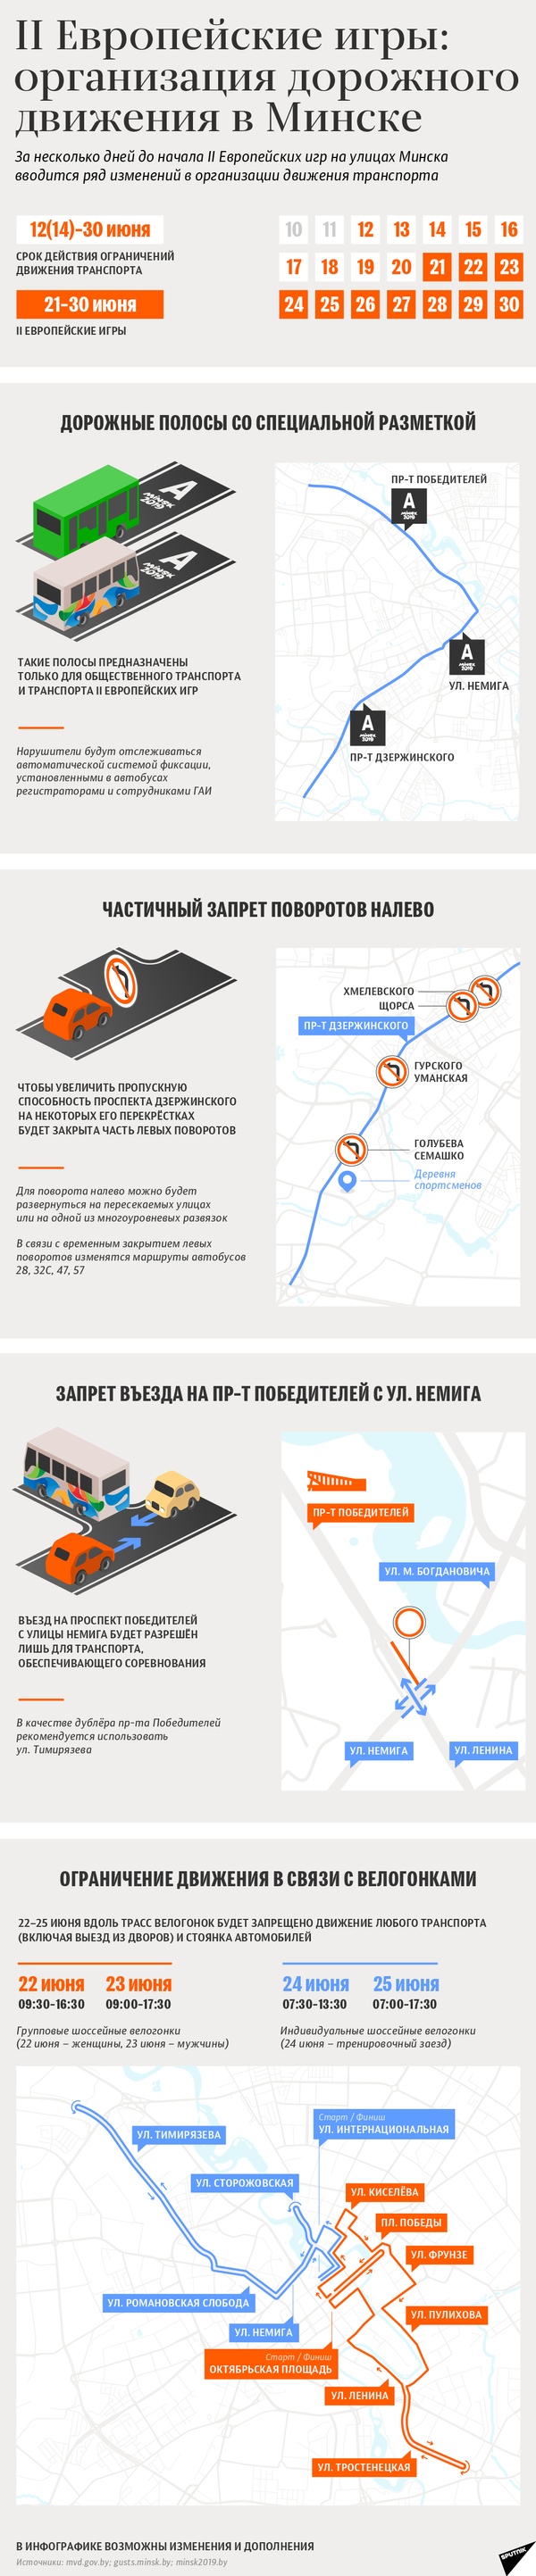 Организация дорожного движения в Минске во время II Европейских игр | Инфографика sputnik.by - Sputnik Беларусь